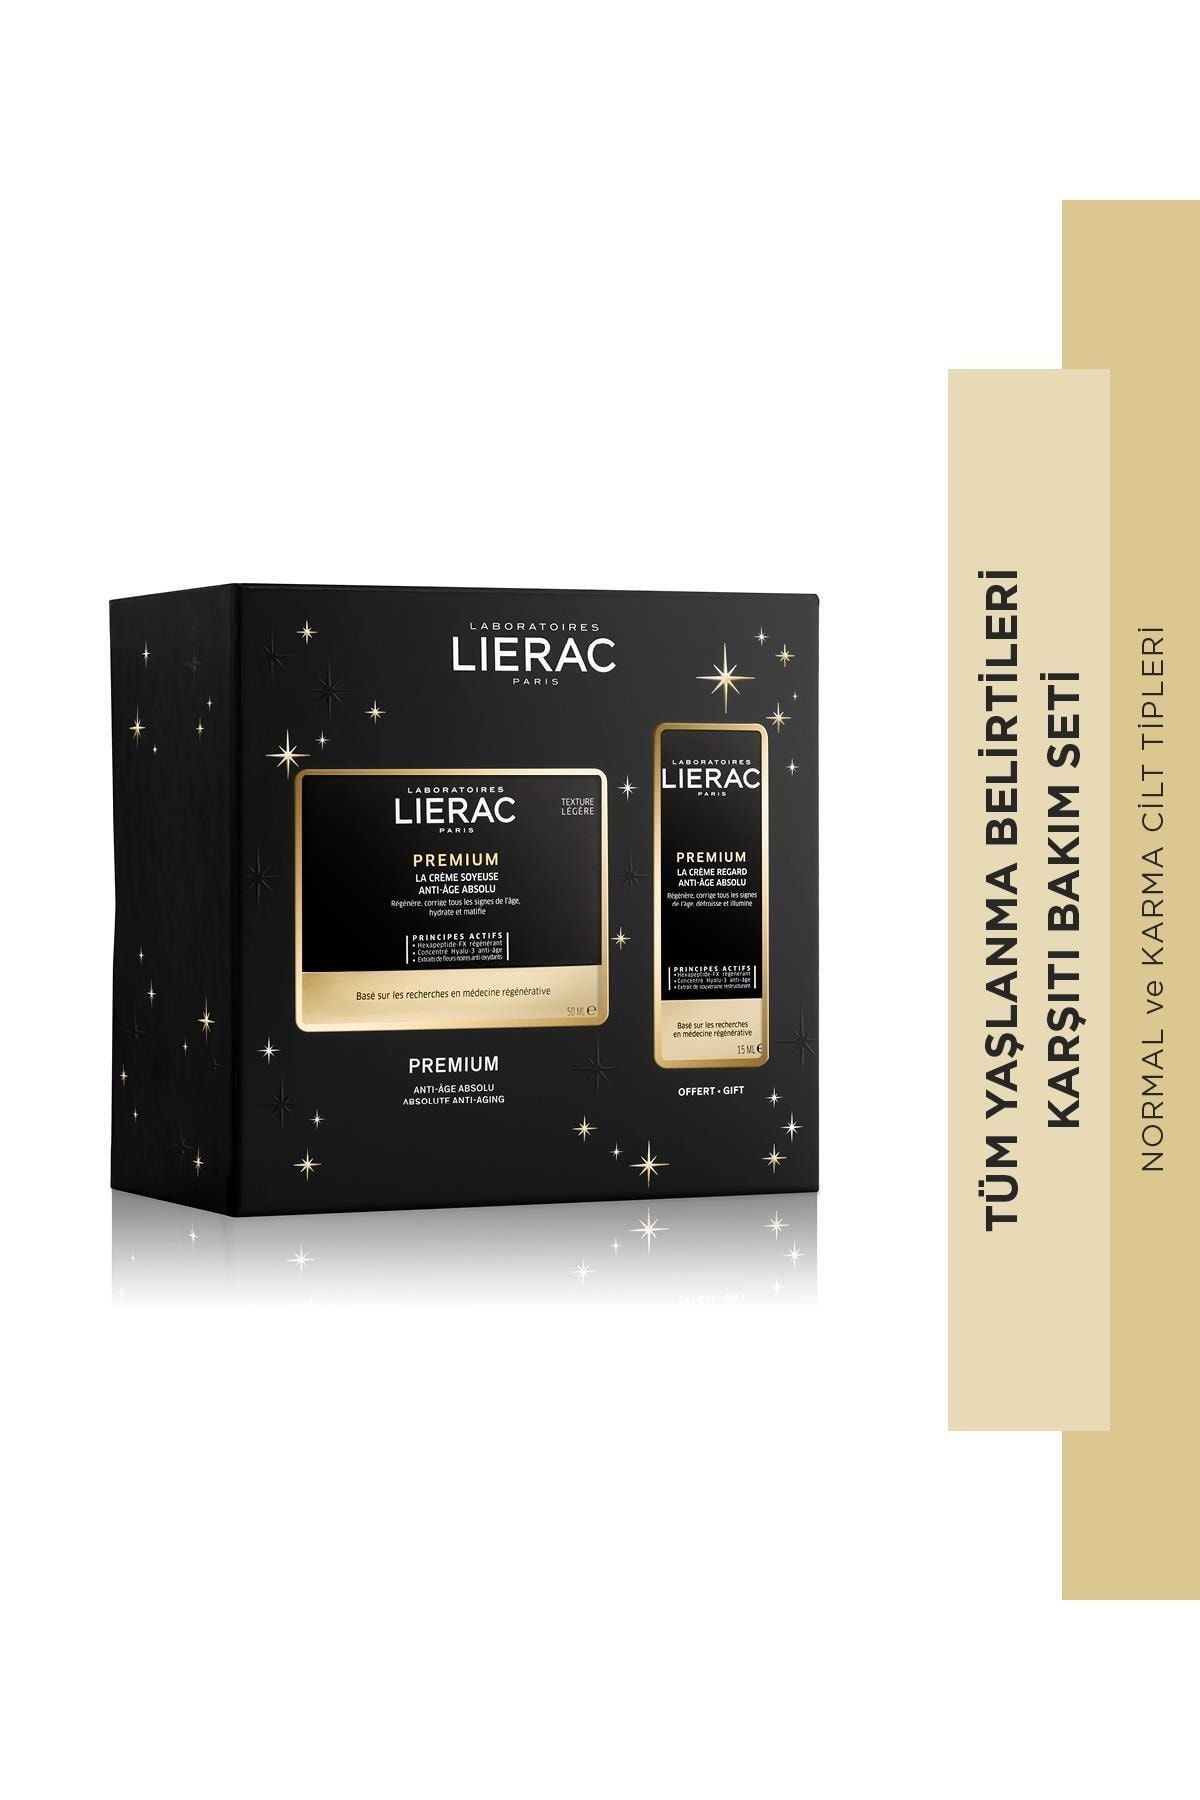 Lierac Premium Silky Cream Kırışıklık Karşıtı Krem 50ml Premium Eye Cream Yaşlanma Karşıtı Göz Kremi 15ml